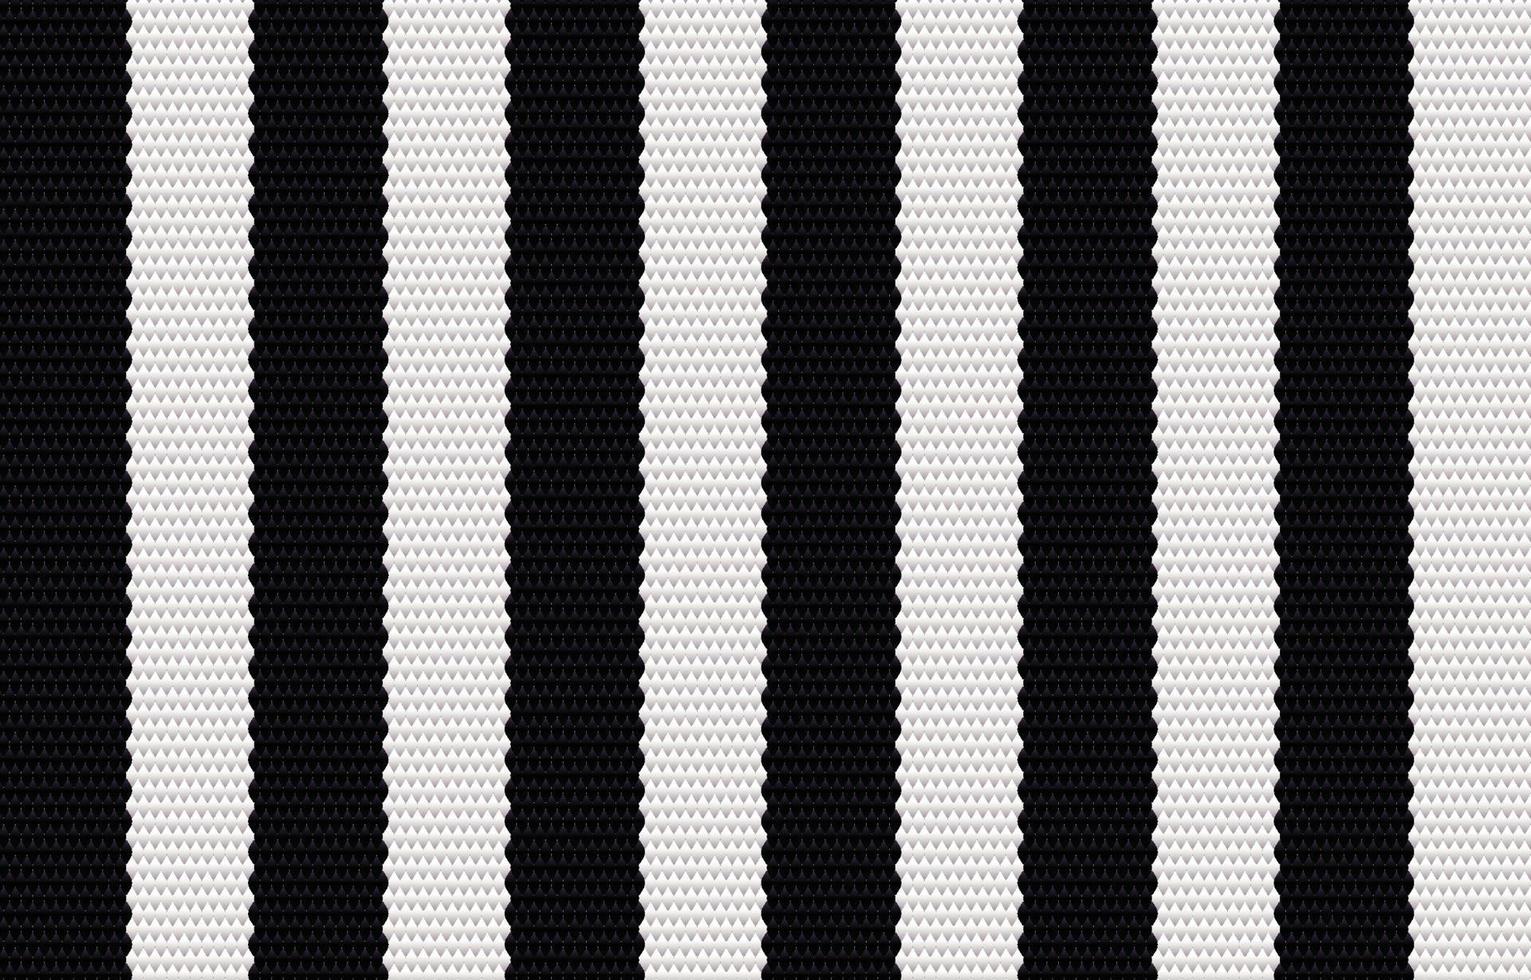 patrón geométrico negro étnico en estilo de tela. diseño para alfombras, papel tapiz, ropa, envoltura, batik, tela, estilo de bordado de ilustración vectorial en temas étnicos. vector